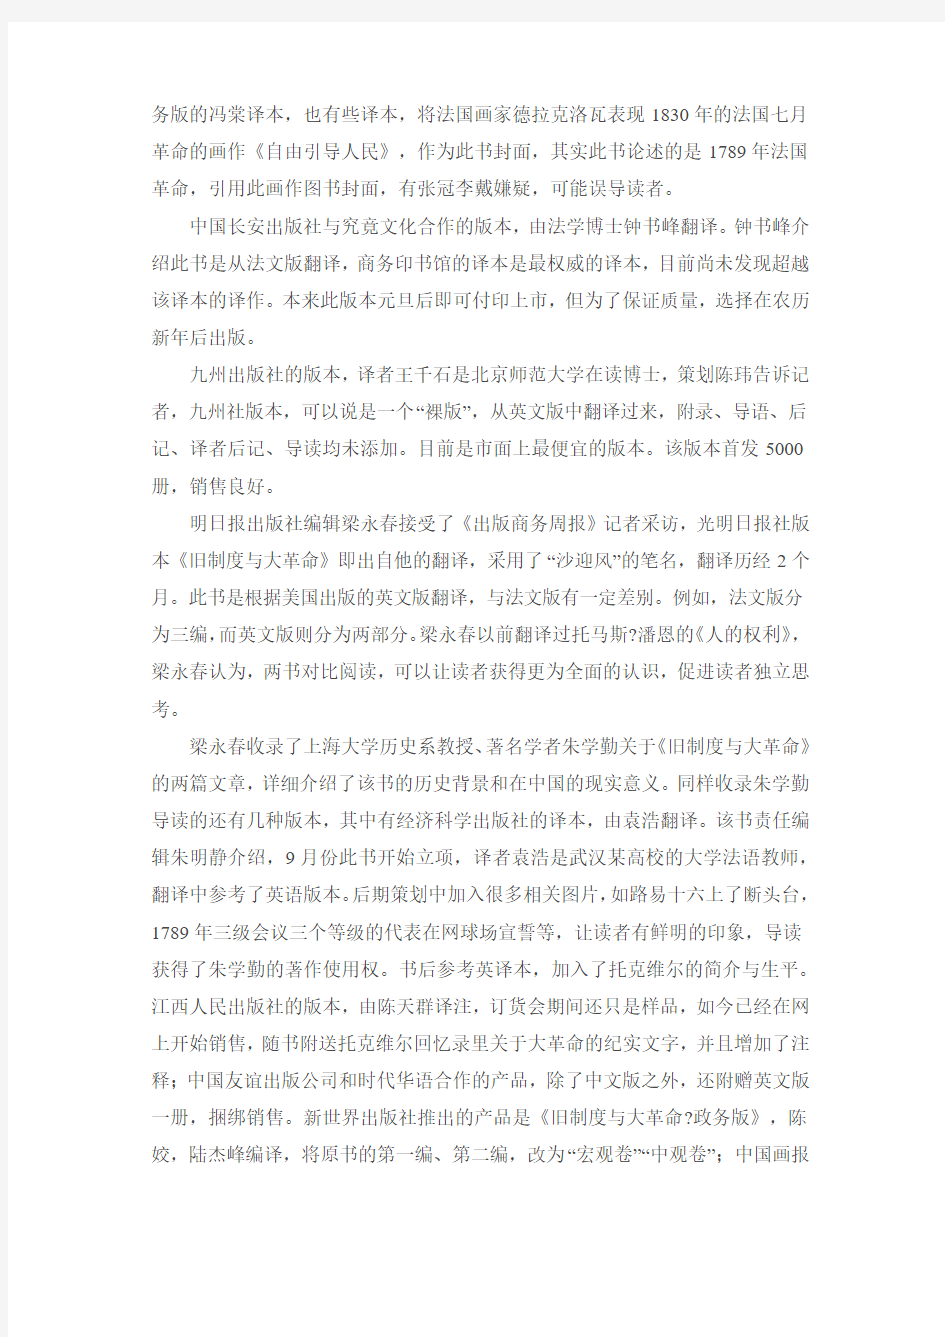 《旧制度与大革命》十余种译本出版-托克维尔走红中国2013.1.271